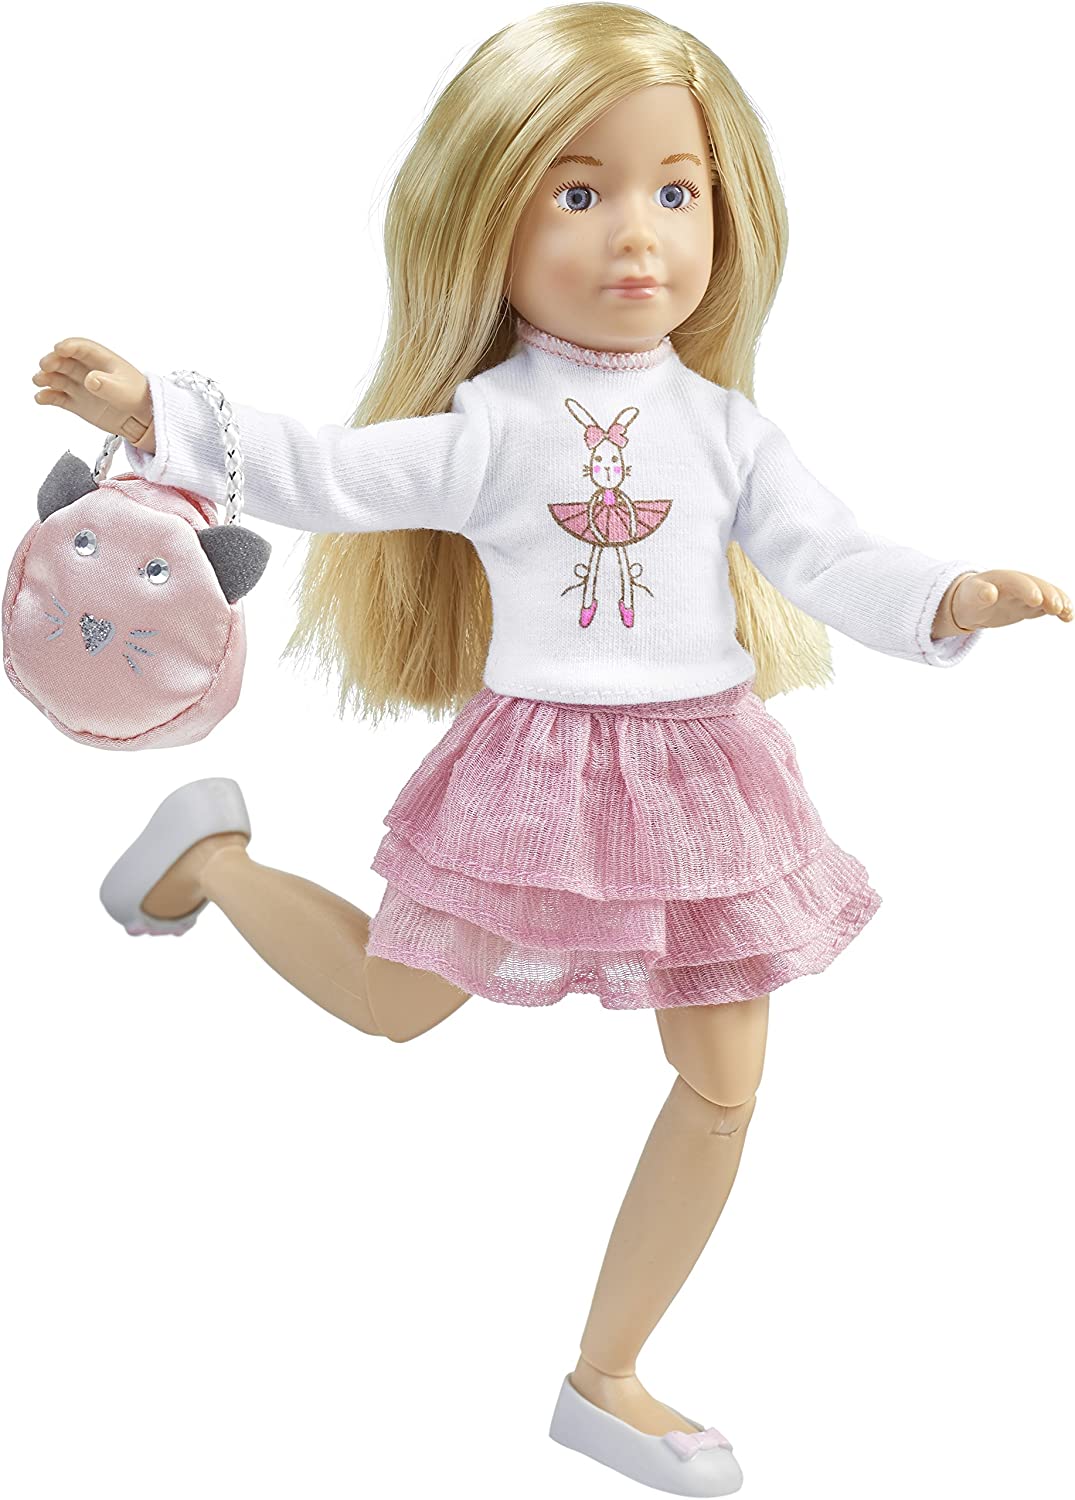 Делюкс набор  - Кукла Вера Kruselings, 23 см с комплектом одежды и аксессуарами  